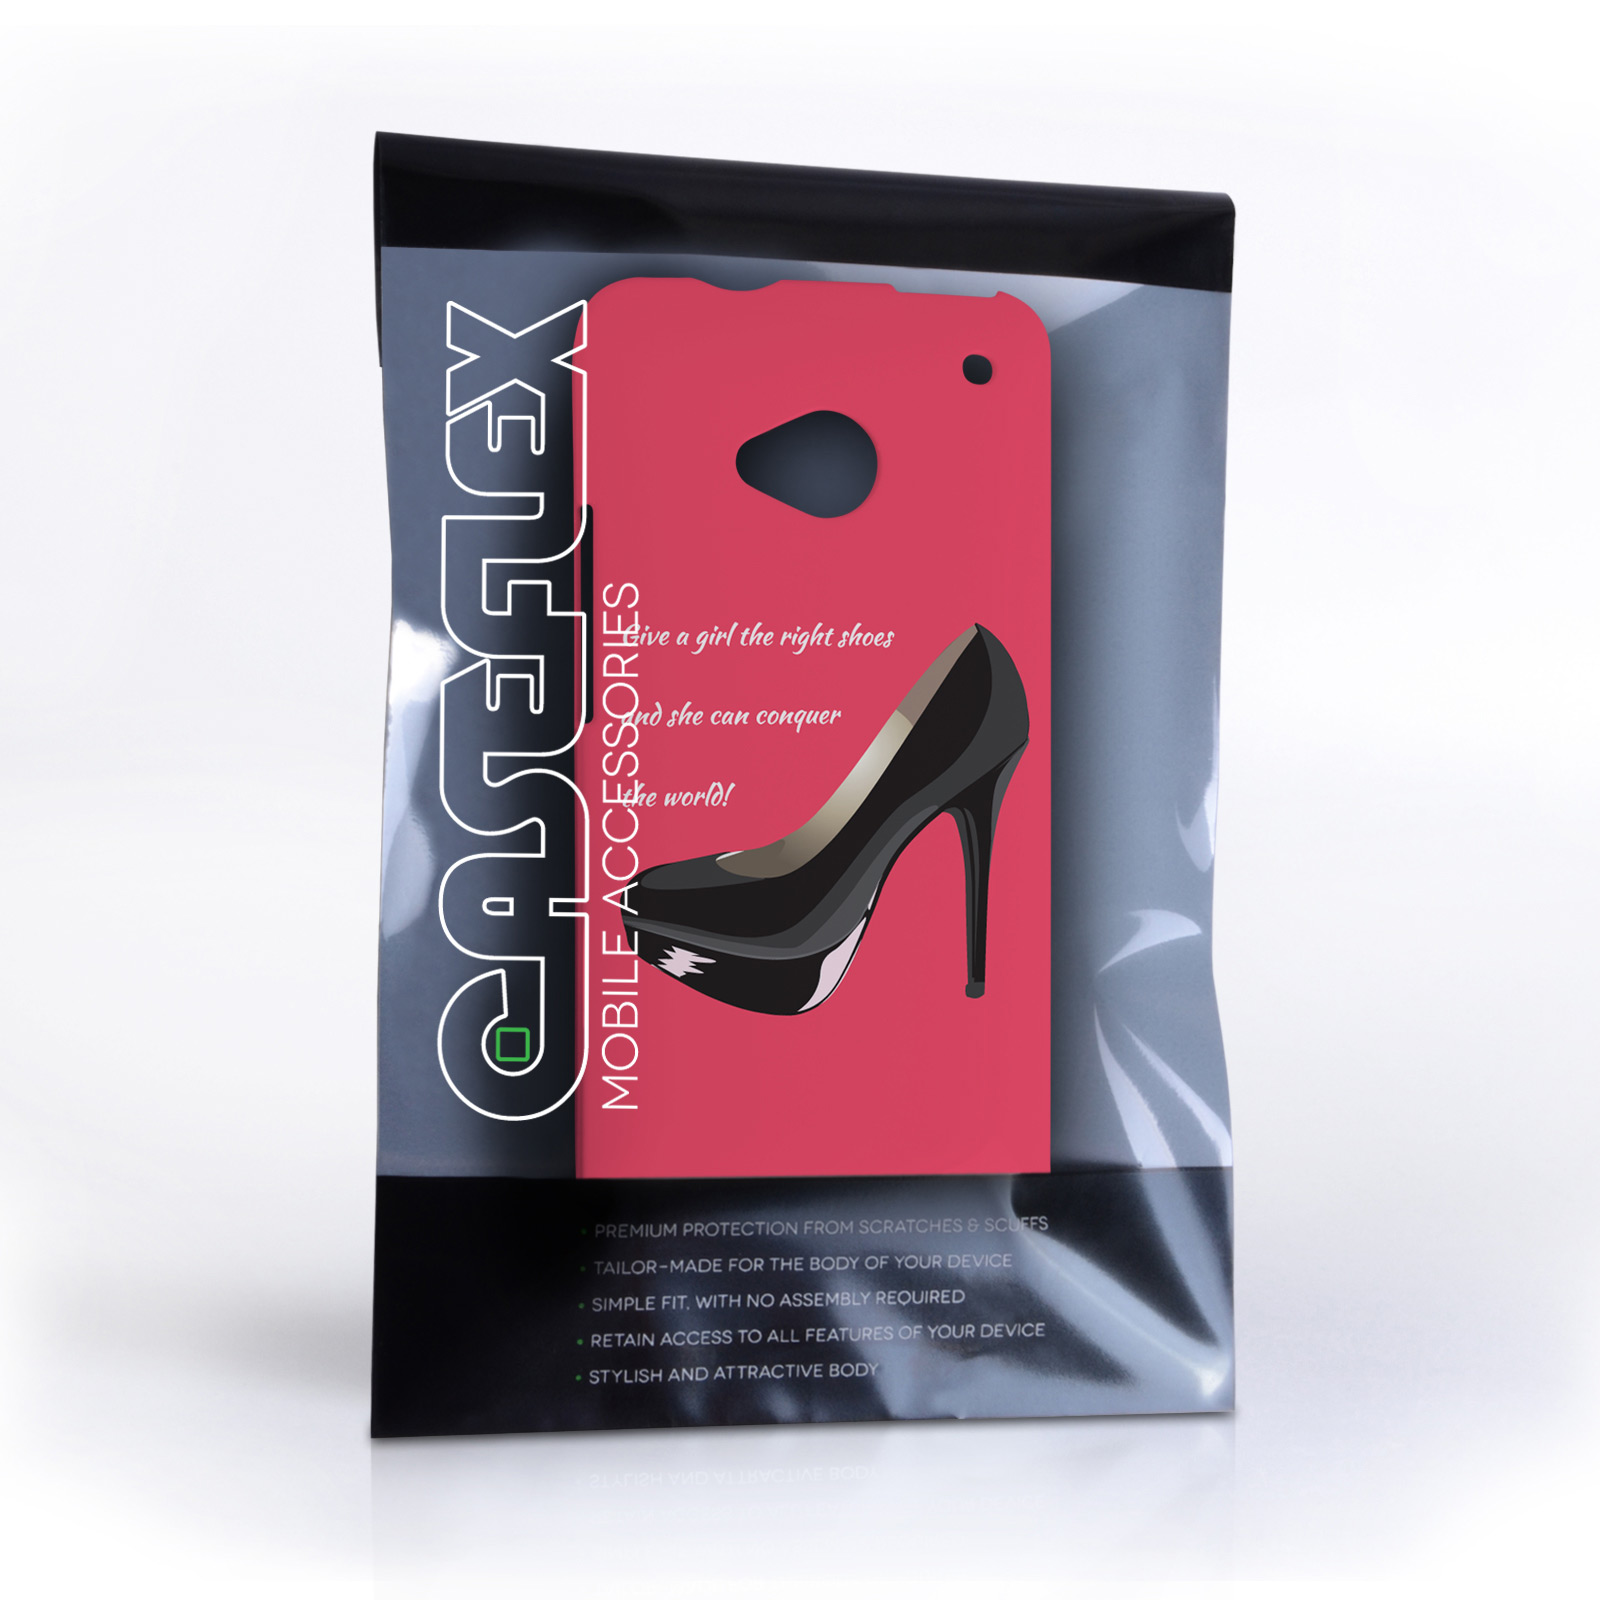 Caseflex HTC One Marilyn Monroe ‘Shoe’ Quote Case